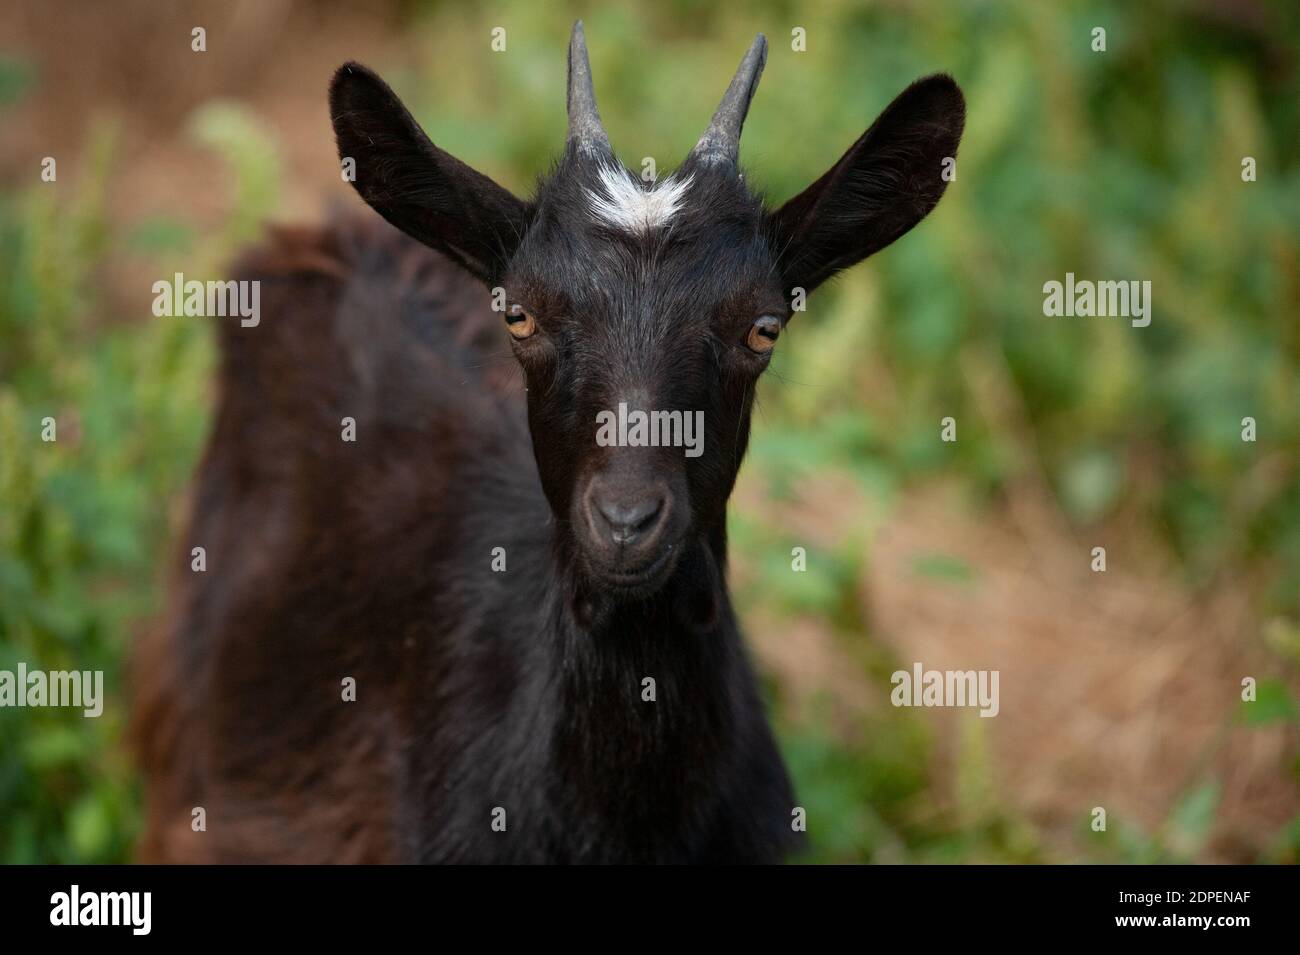 Retrato de una joven cabra negra en la granja Foto de stock